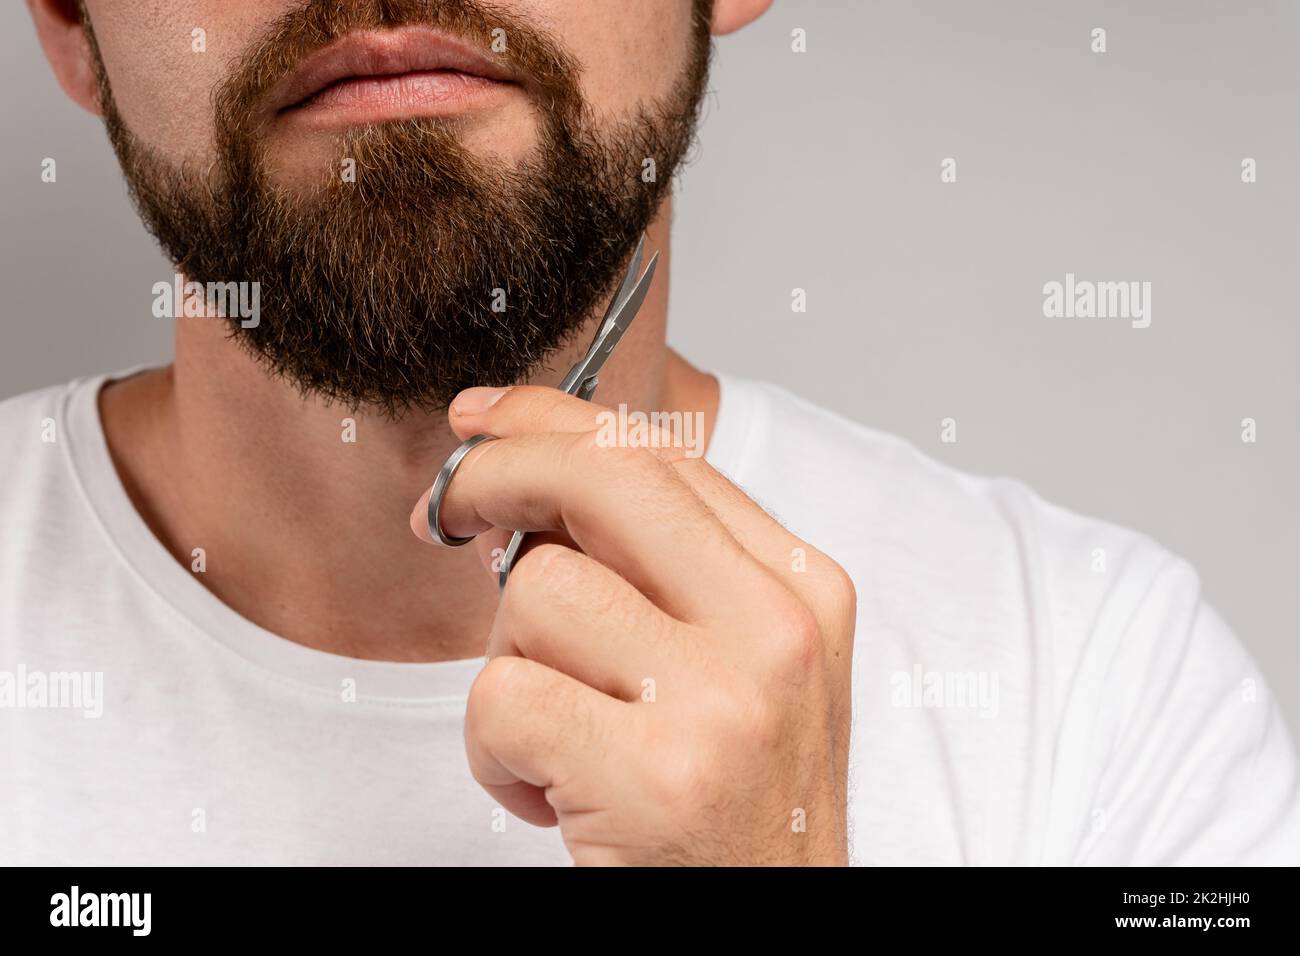 Homme tailler sa barbe avec des ciseaux Banque D'Images